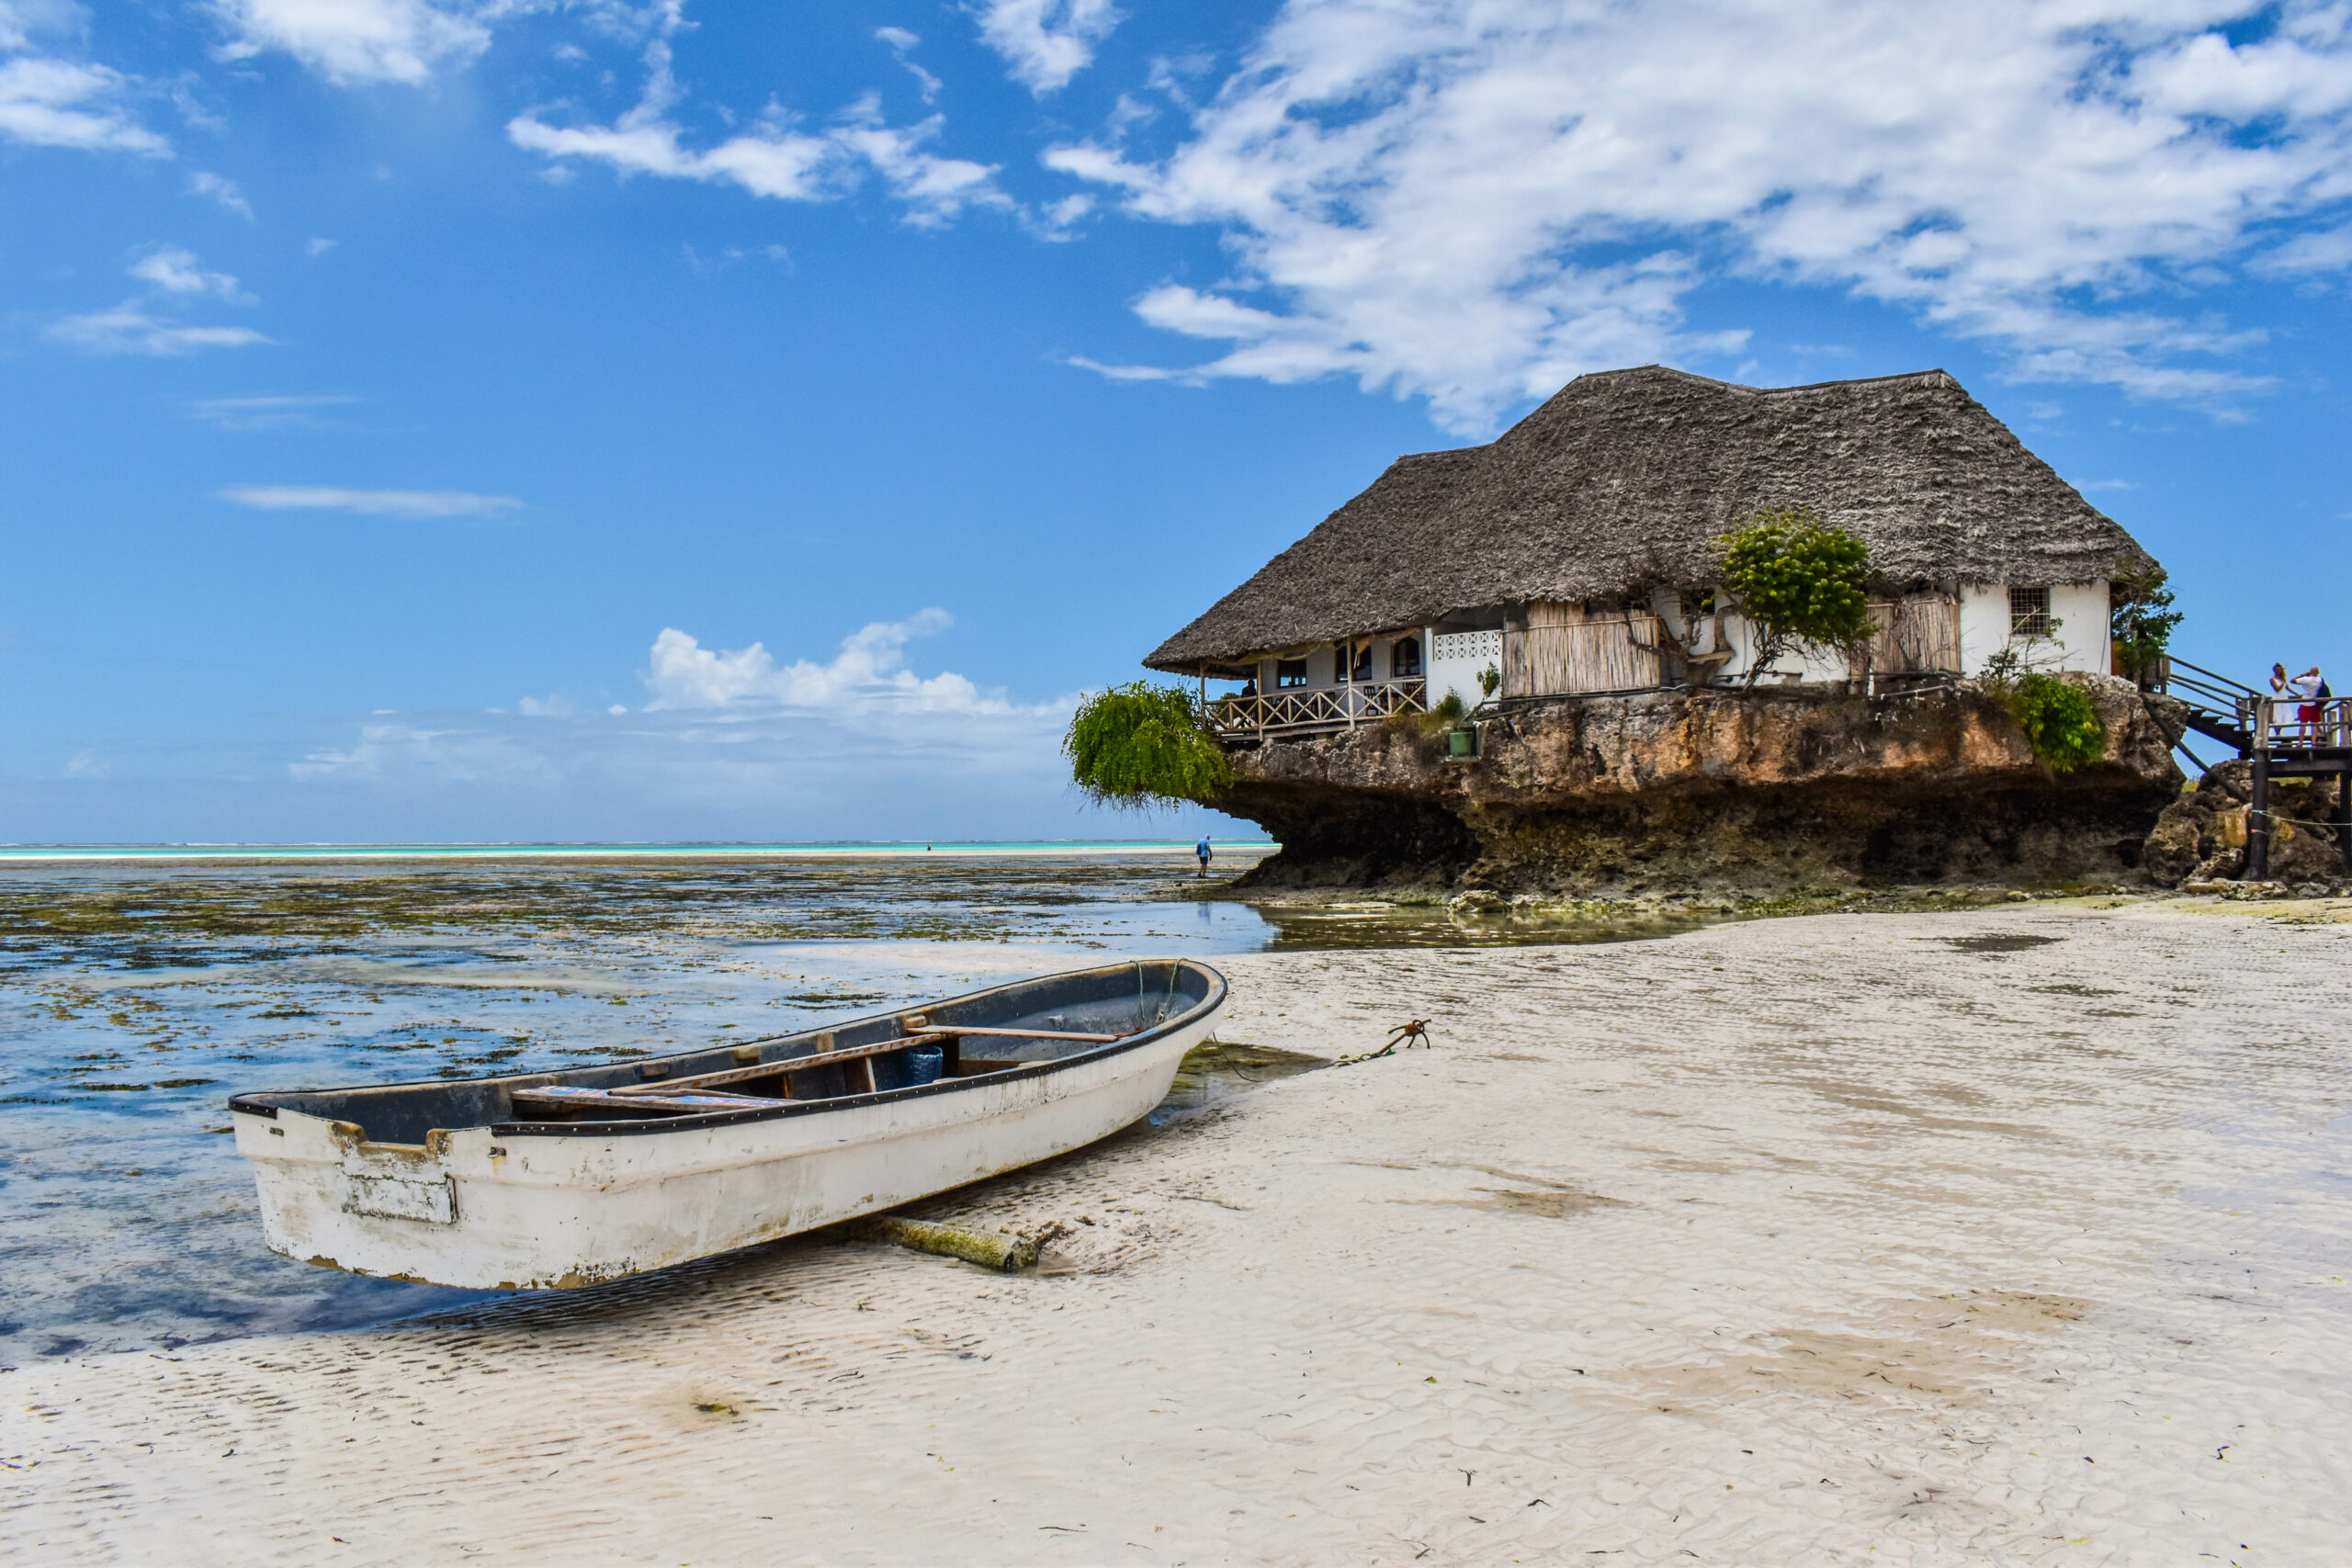 Canot sur la plage à Zanzibar, devant un restaurant installé sur un monticule rocheux